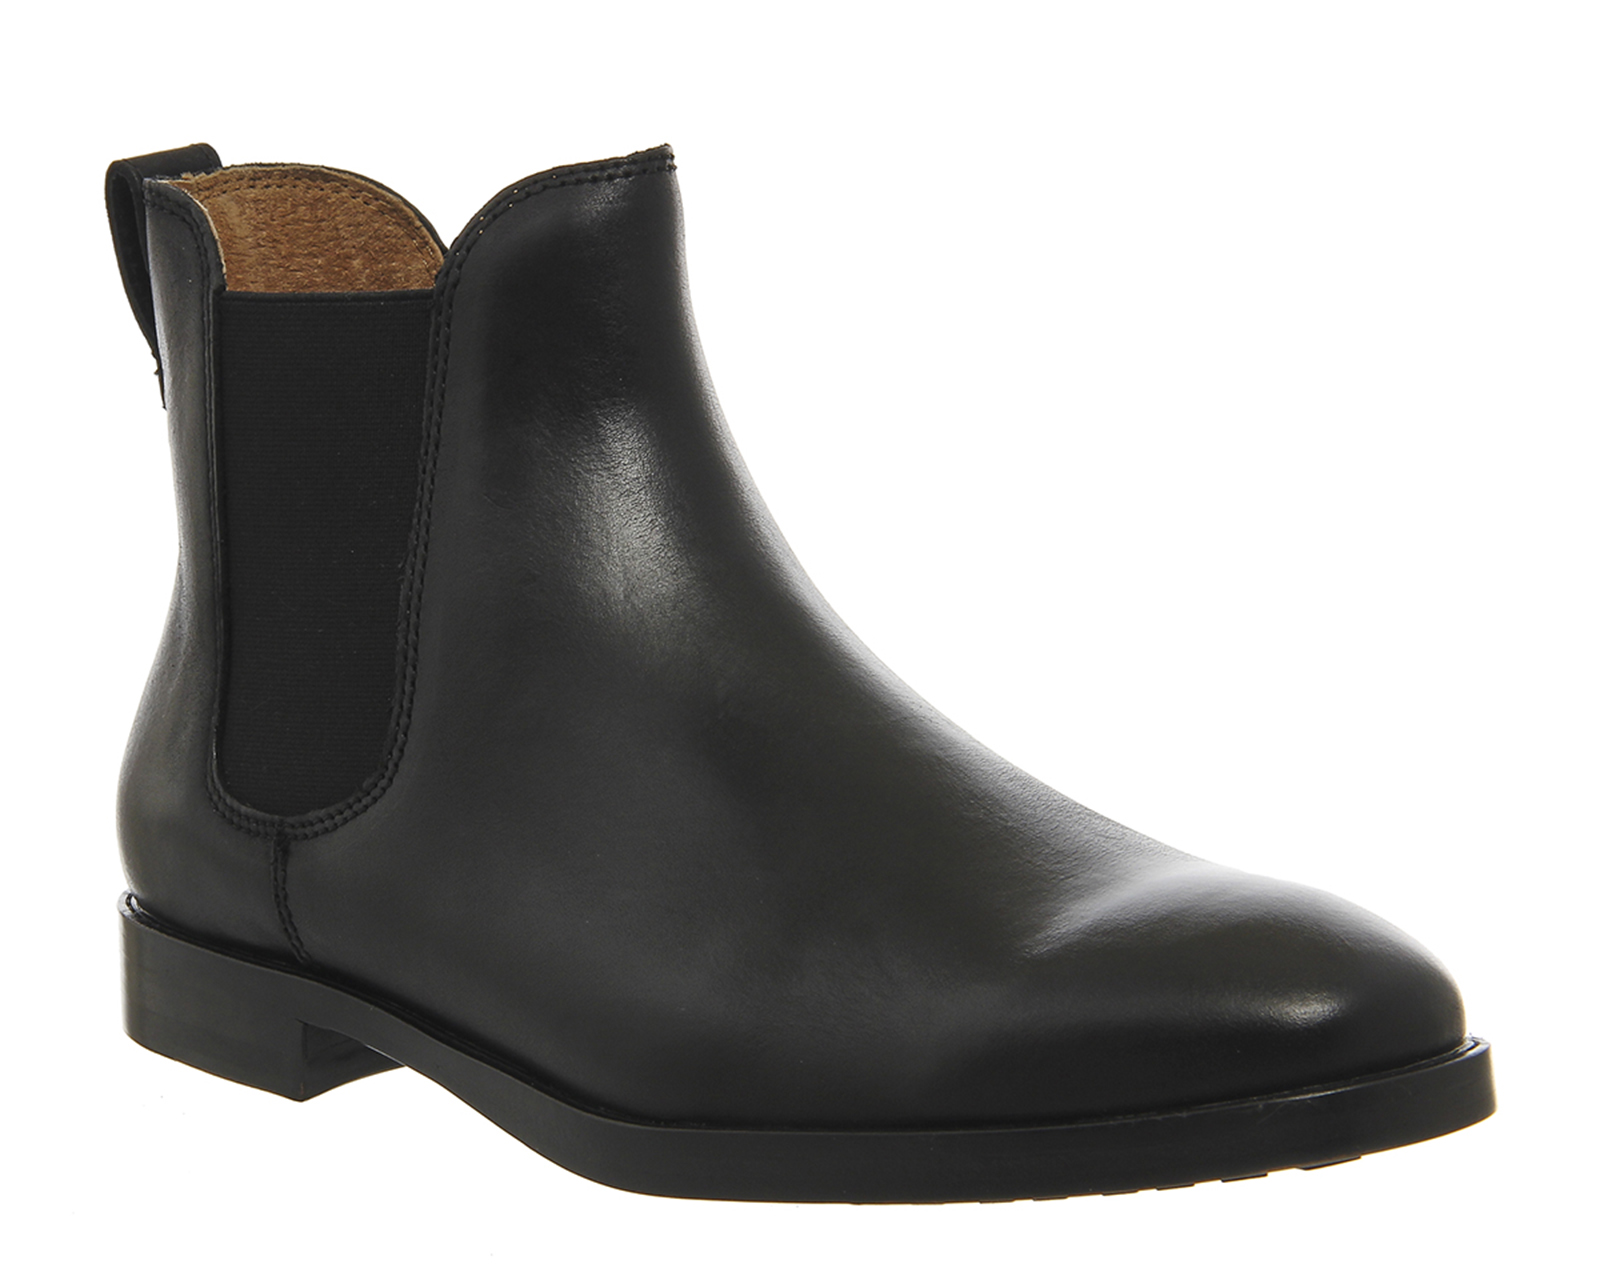 Ralph Lauren Dillian Chelsea Boots Black - Casual